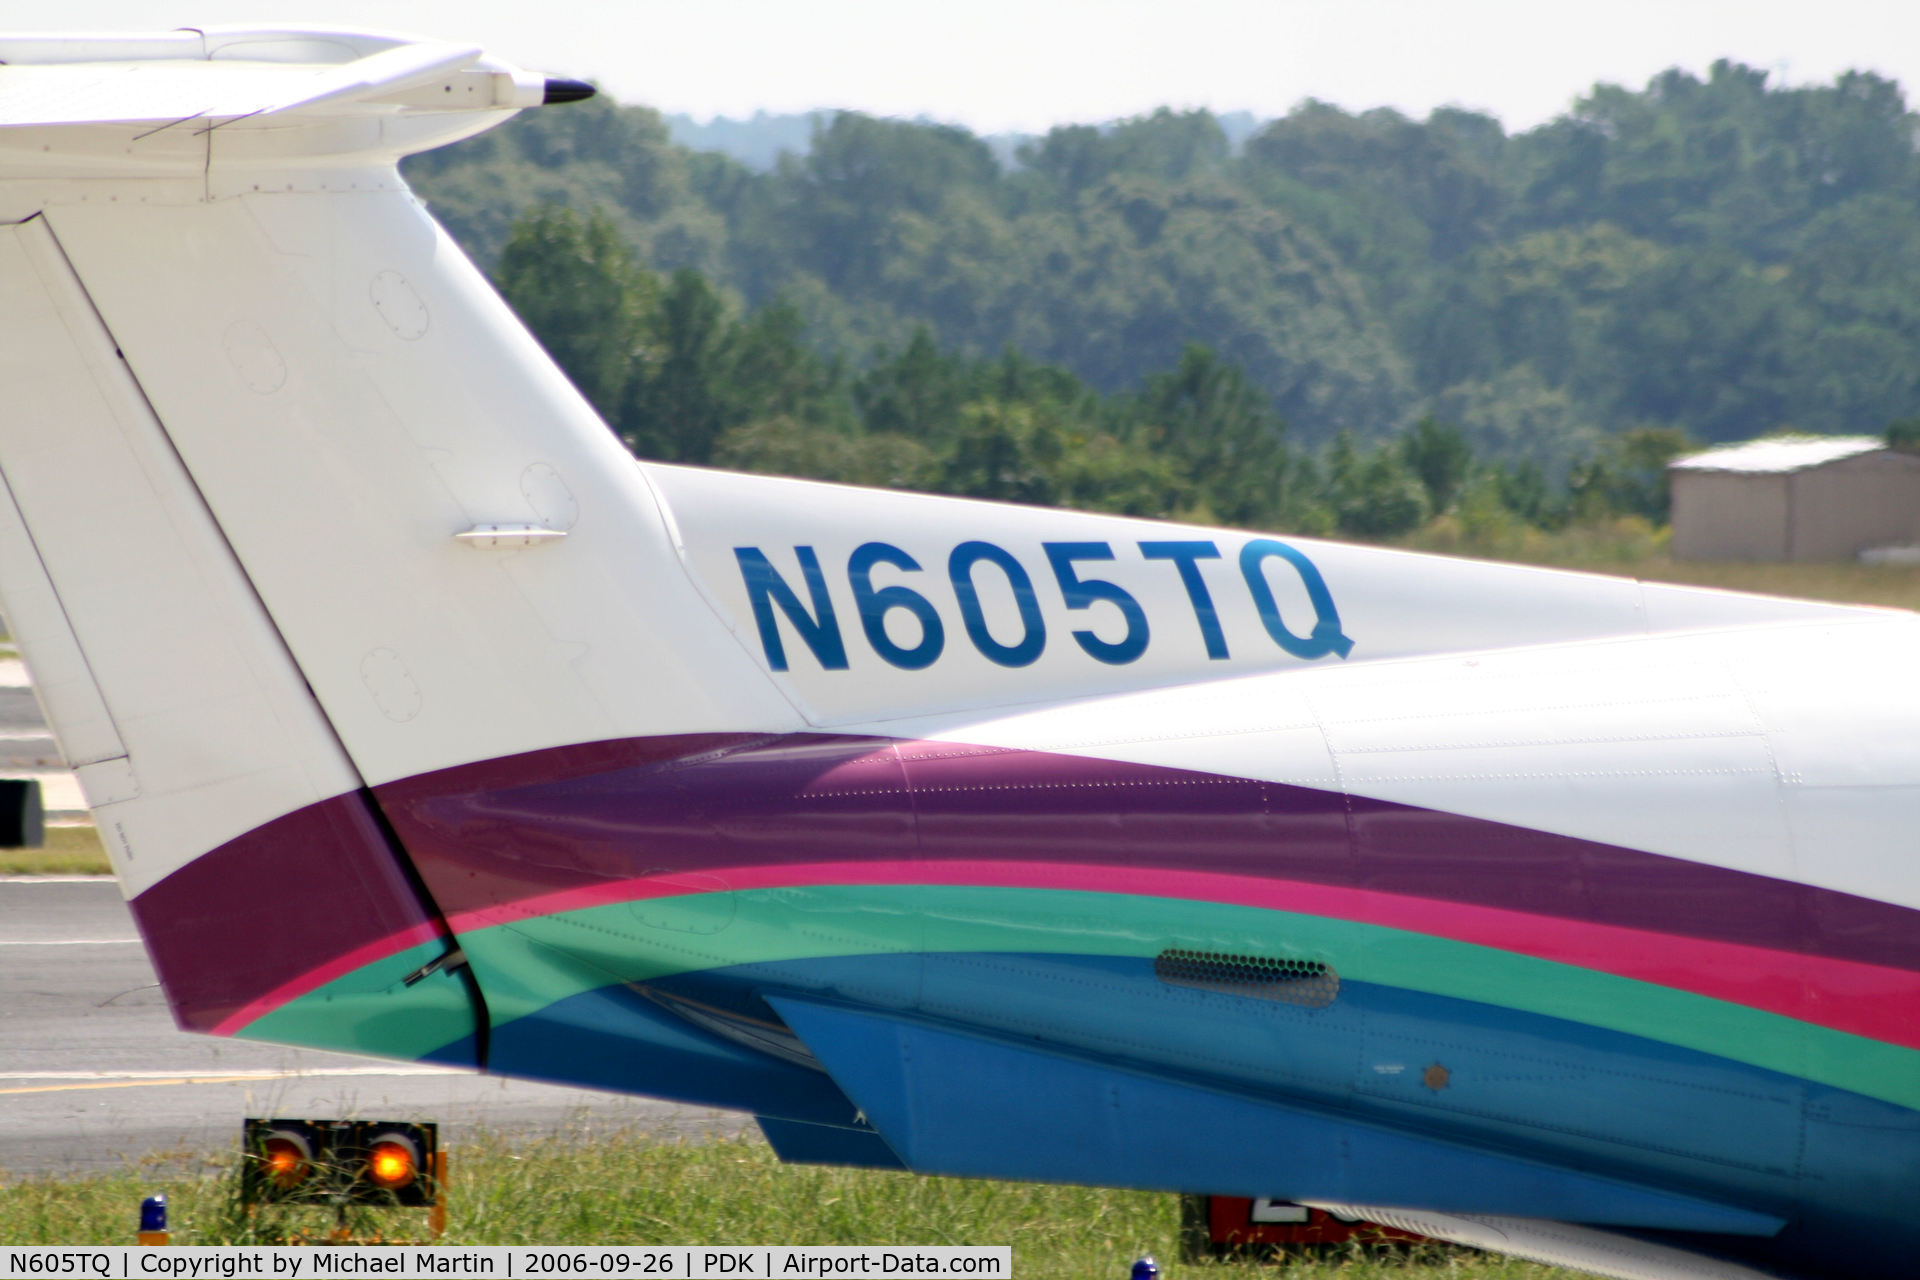 N605TQ, 2000 Pilatus PC-12/45 C/N 320, Tail Numbers